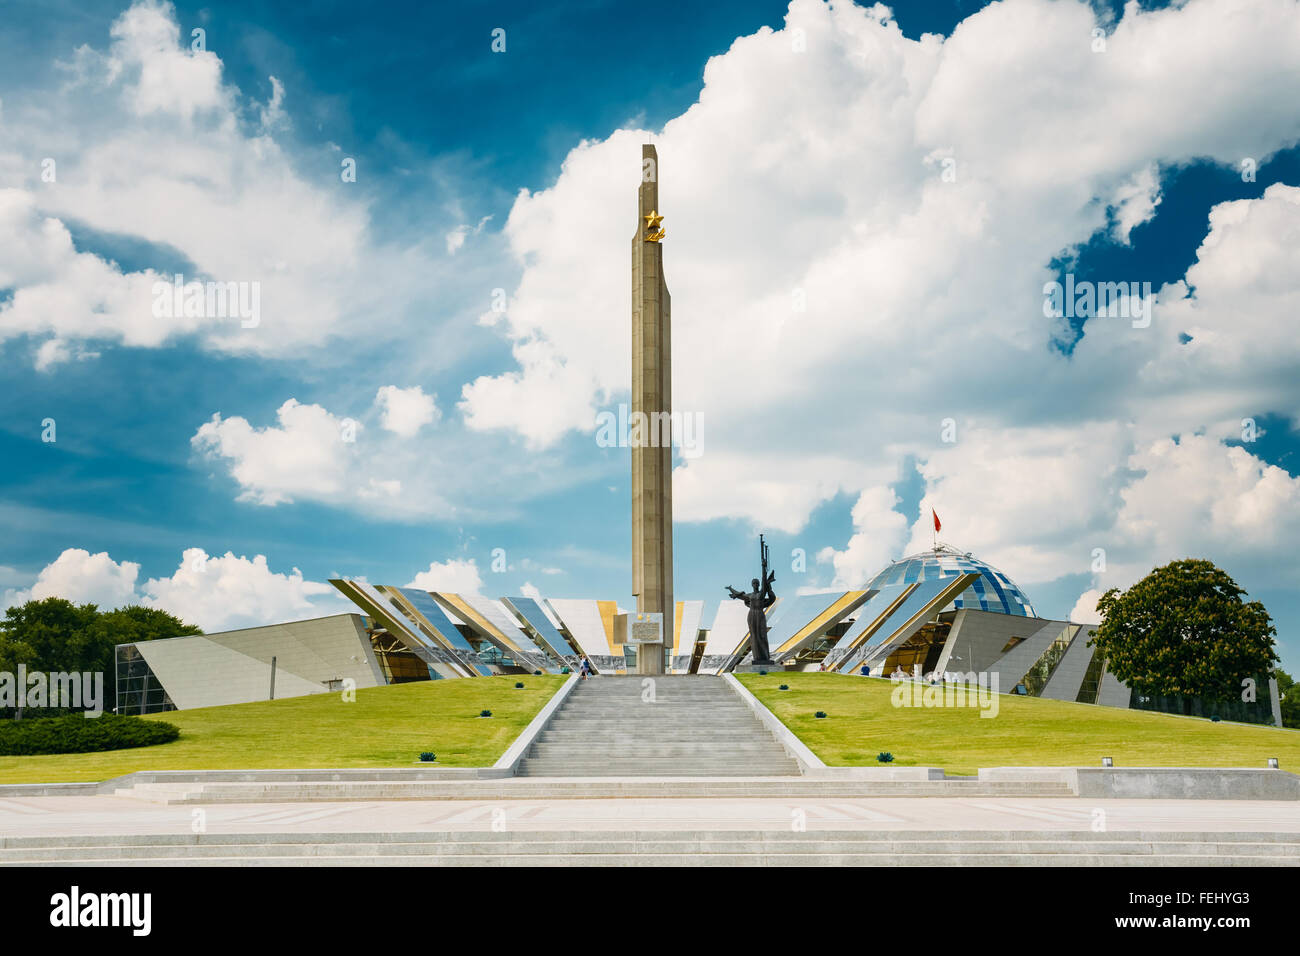 Le réseau est un monument situé près du bâtiment du musée de la Grande Guerre Patriotique à Minsk, Bélarus Banque D'Images